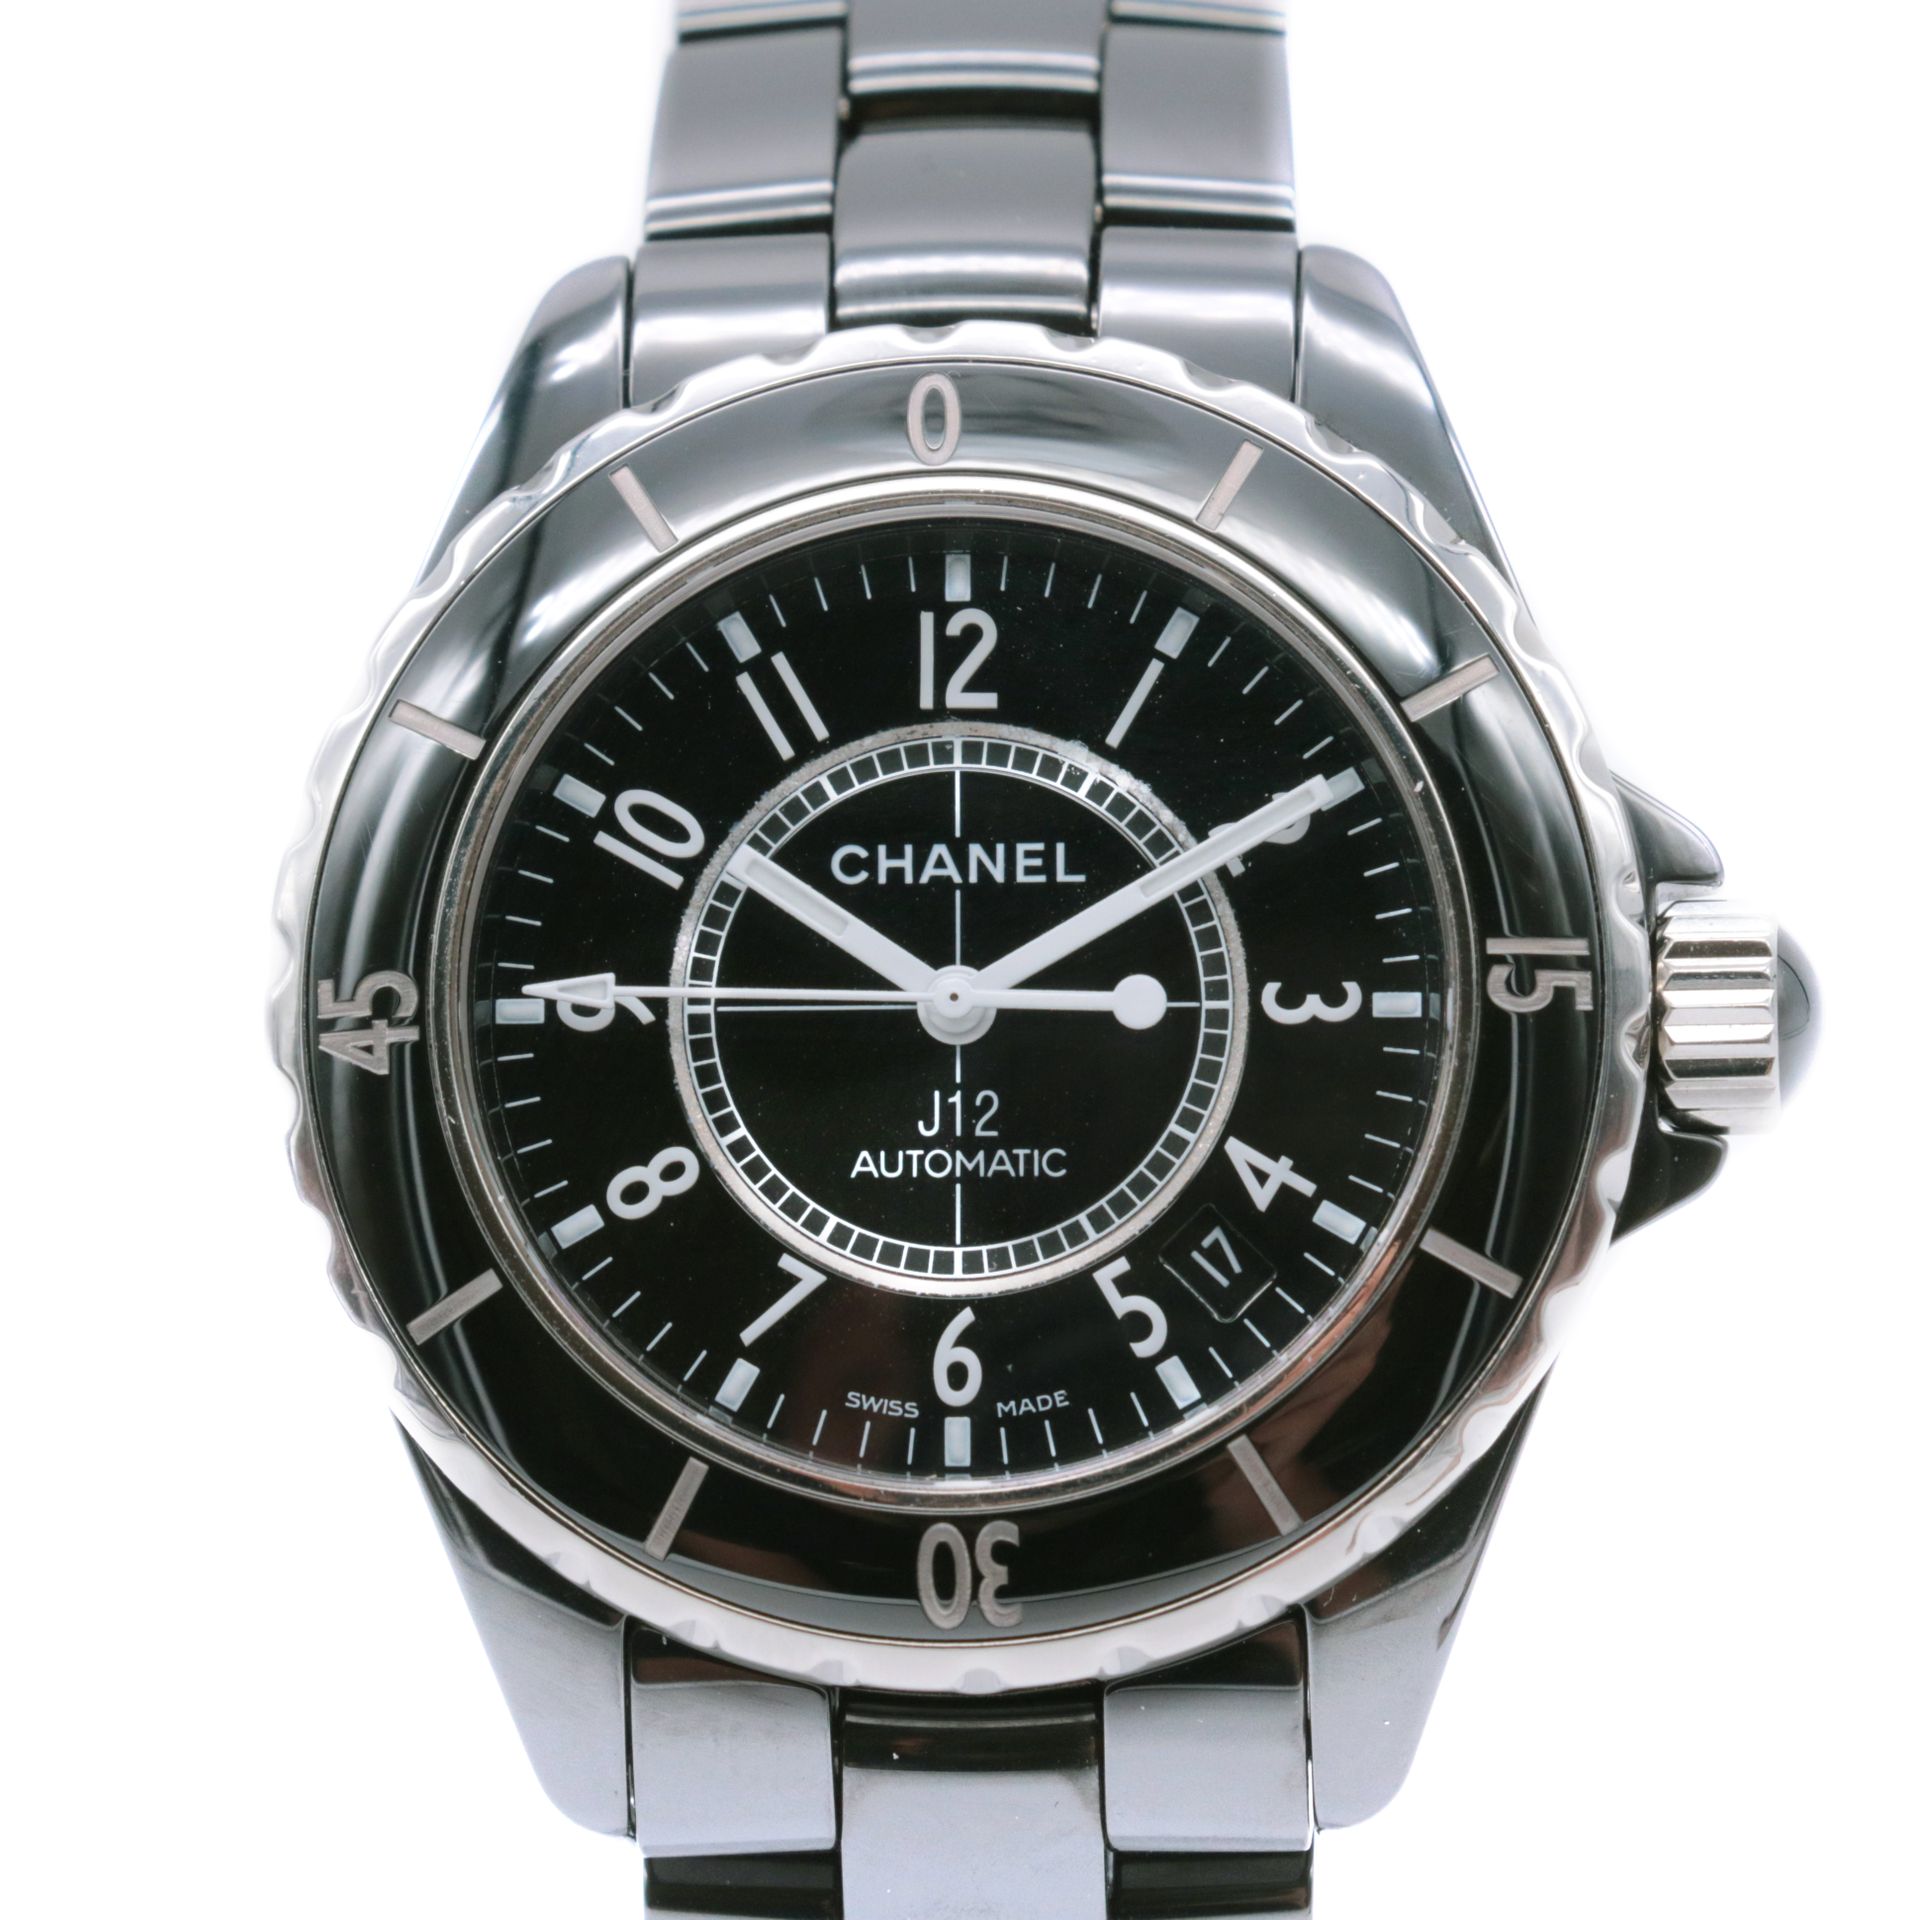 Montre Chanel, J12 Ceramic Le boitier en céramique et titane, signé

Le cadran c&hellip;